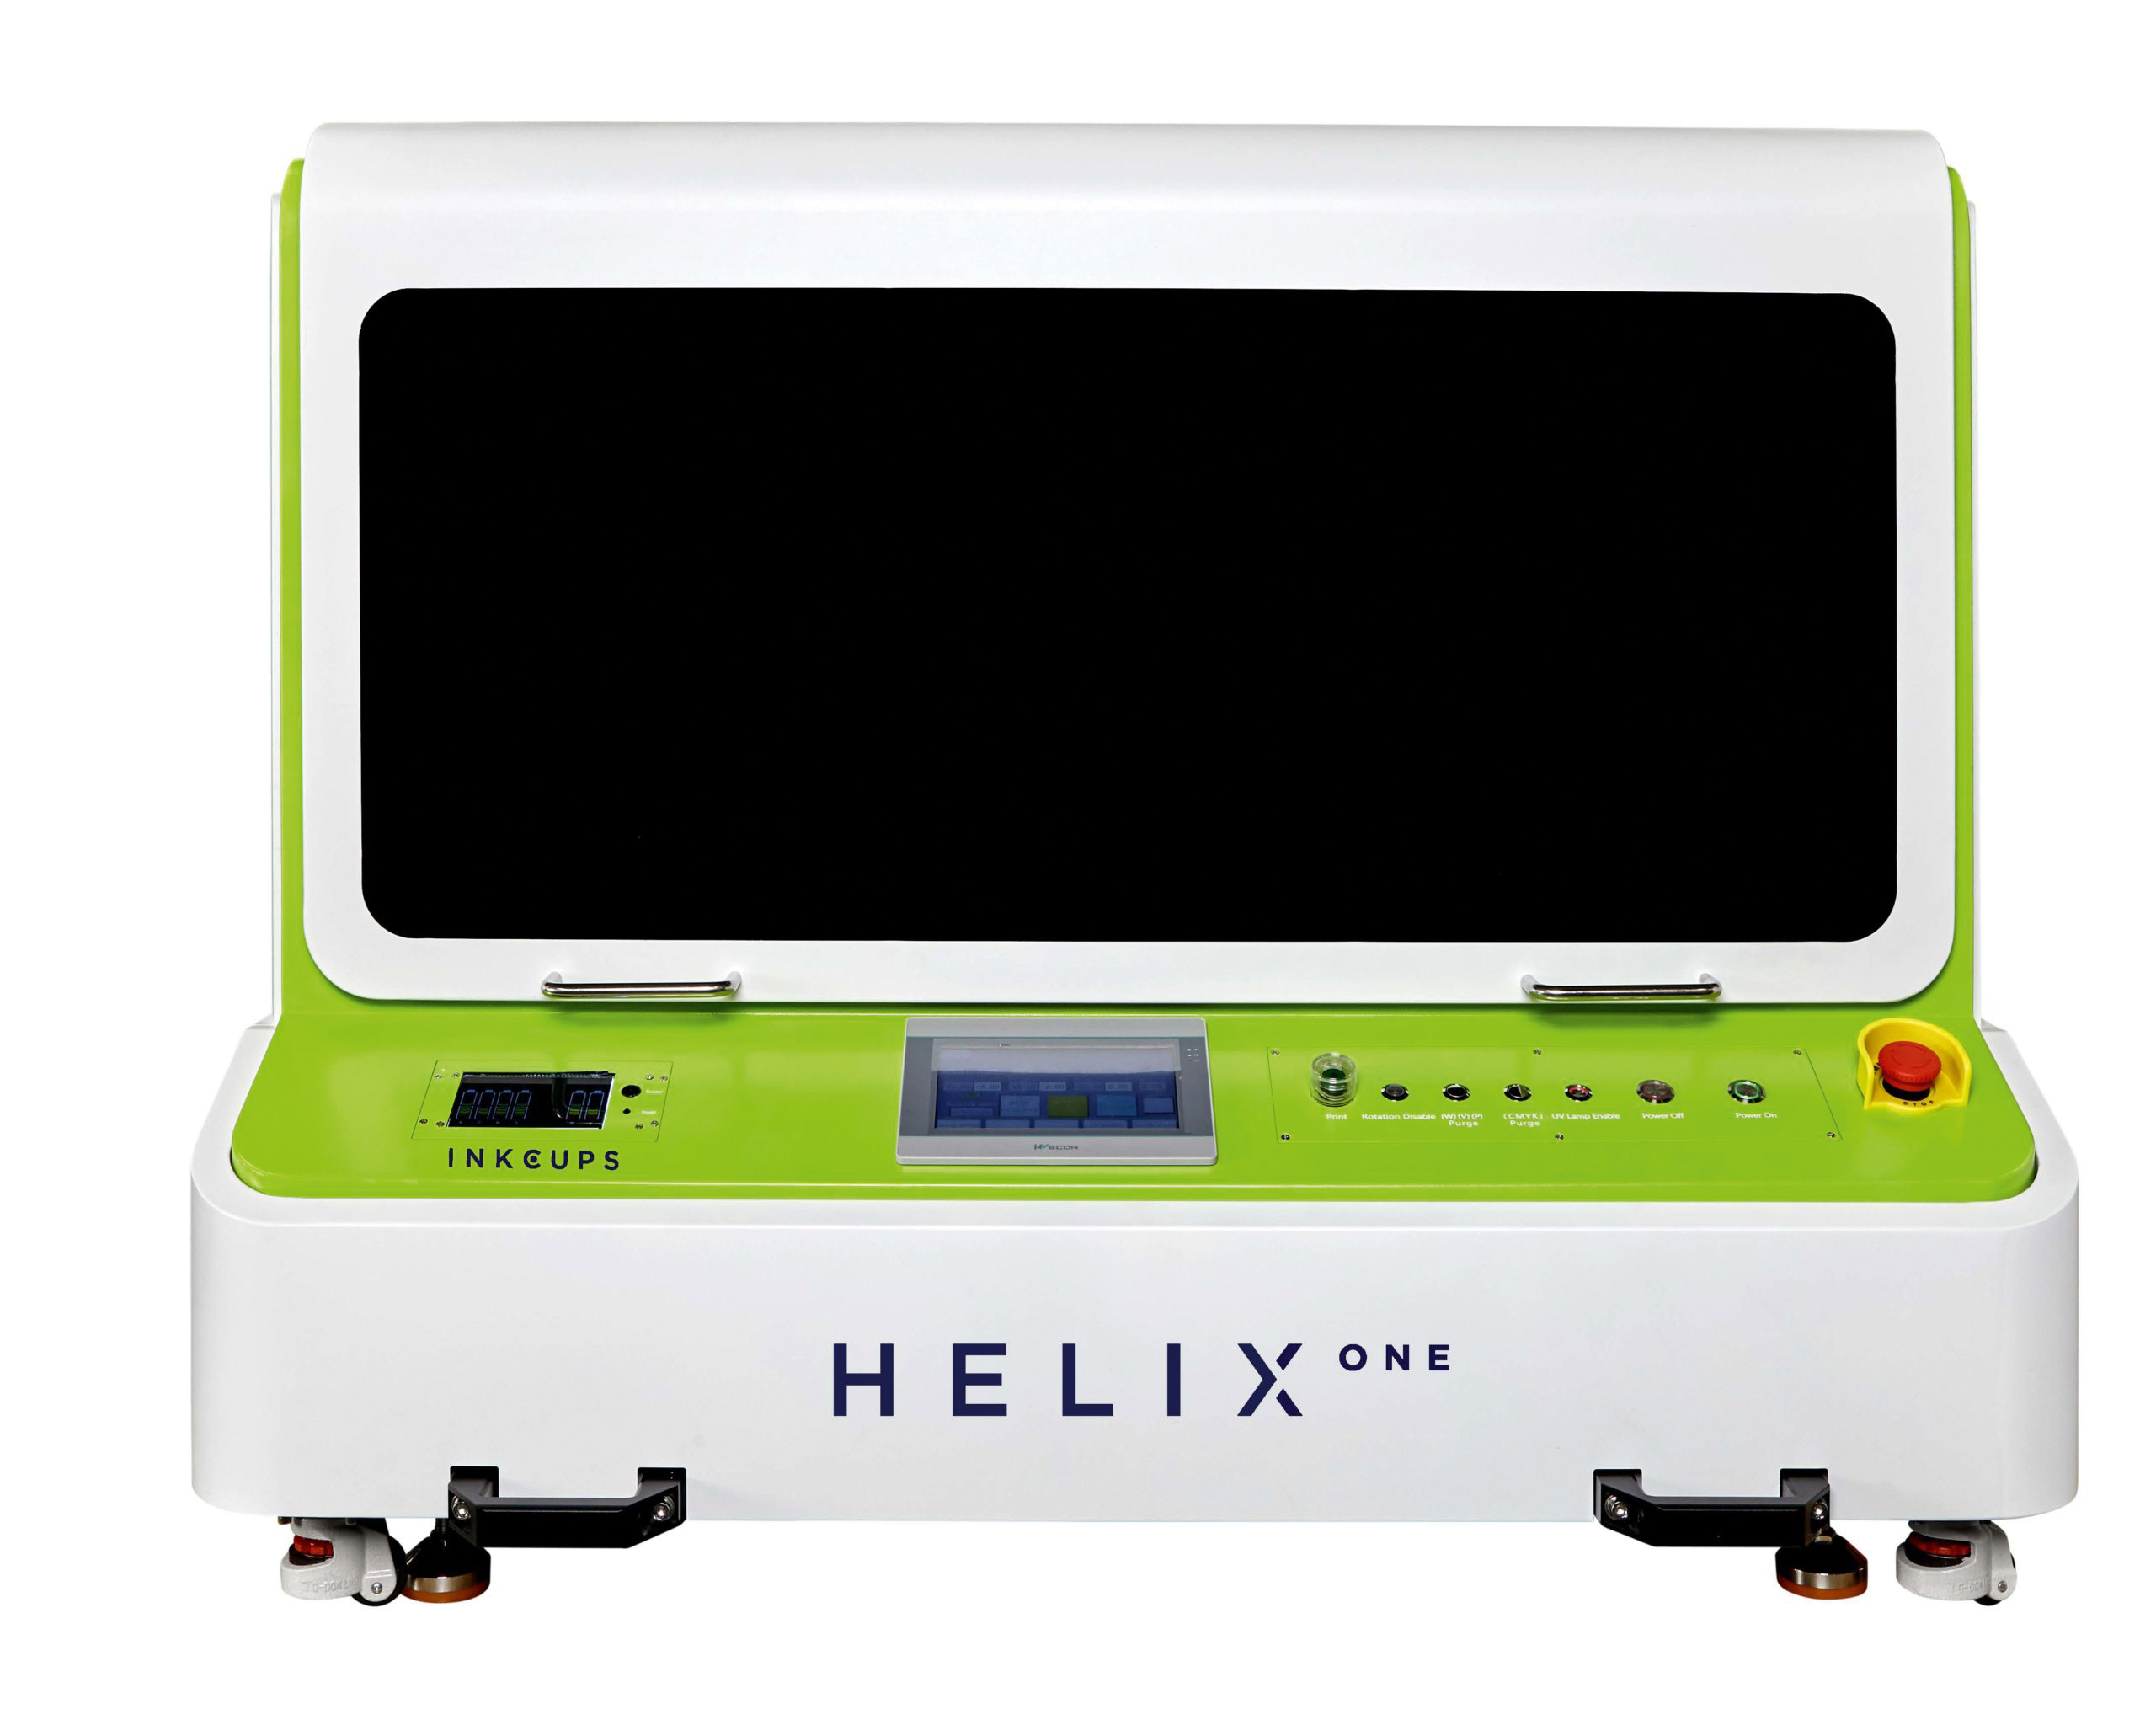 helix-one-010623-scaled.jpg